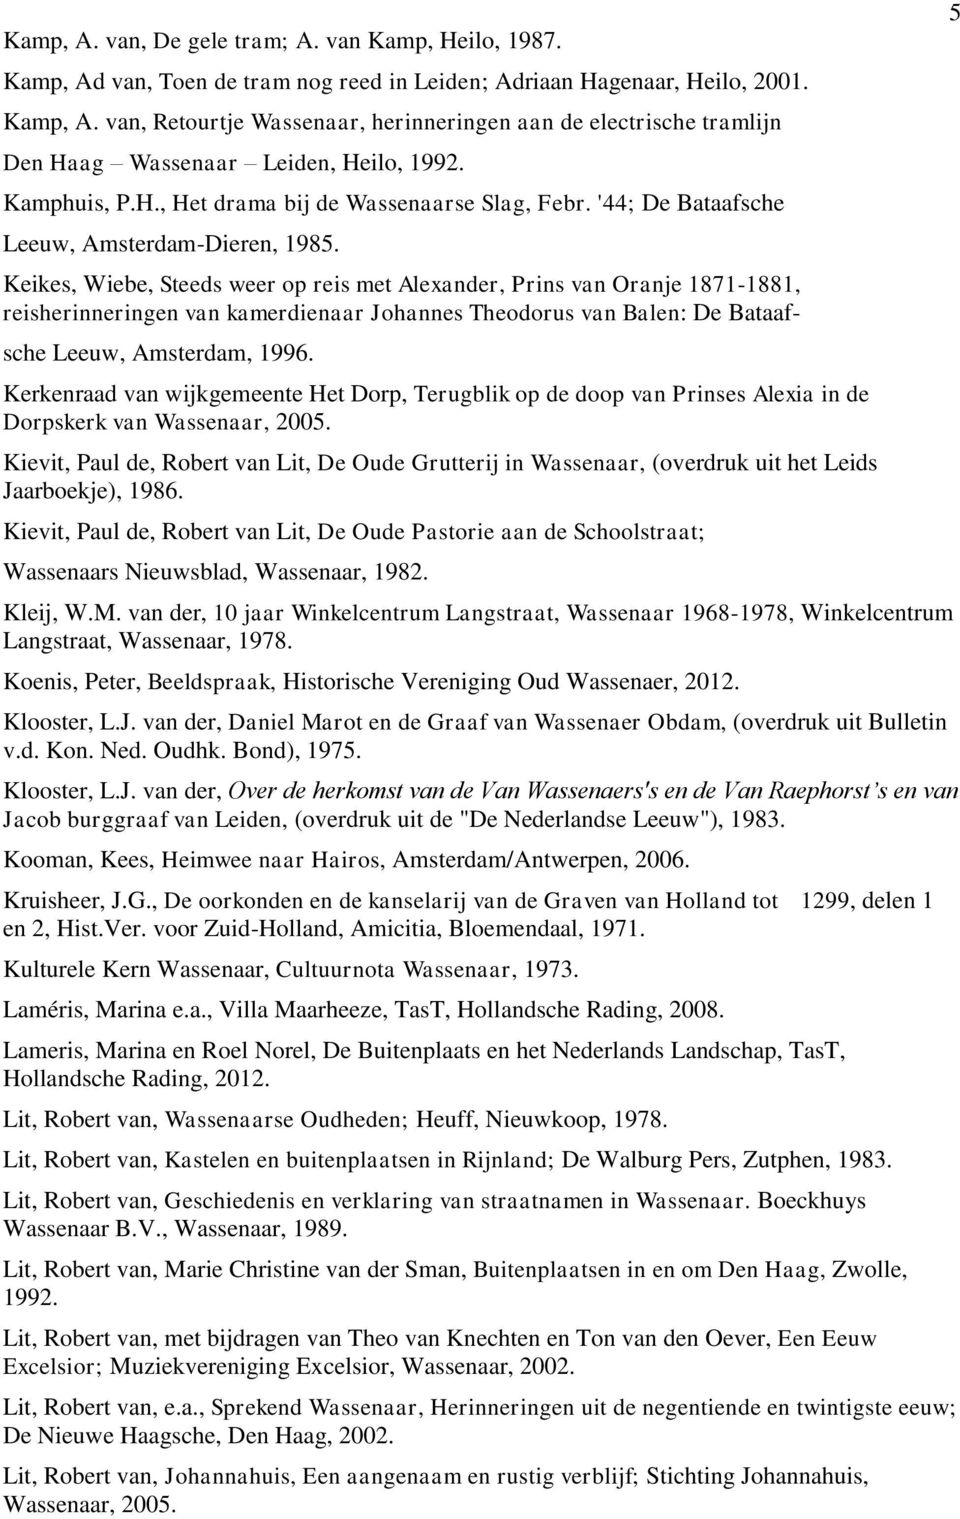 Keikes, Wiebe, Steeds weer op reis met Alexander, Prins van Oranje 1871-1881, reisherinneringen van kamerdienaar Johannes Theodorus van Balen: De Bataaf- sche Leeuw, Amsterdam, 1996.